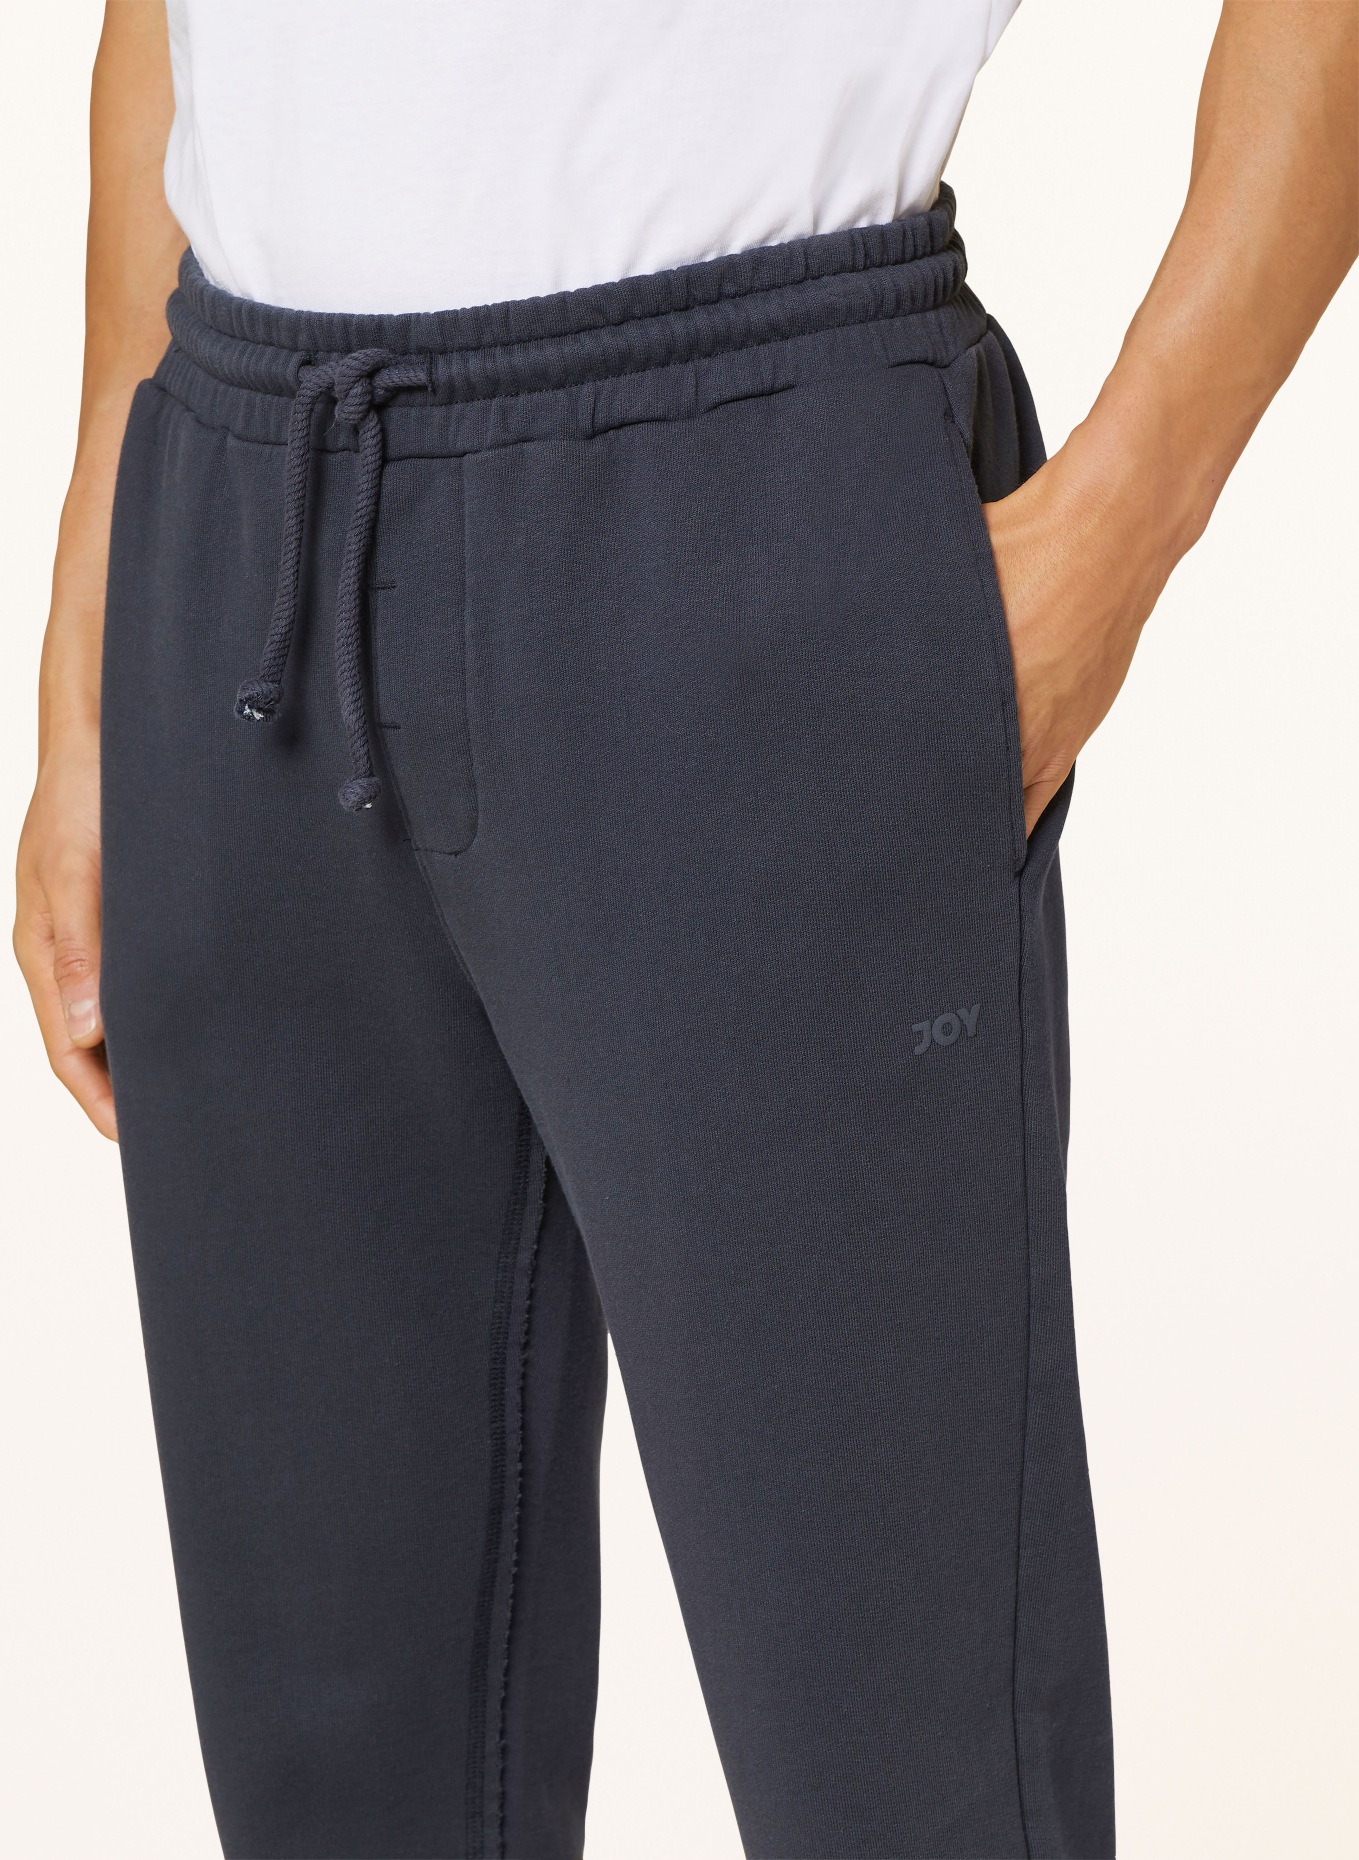 JOY sportswear Sweatpants, Color: DARK BLUE (Image 5)